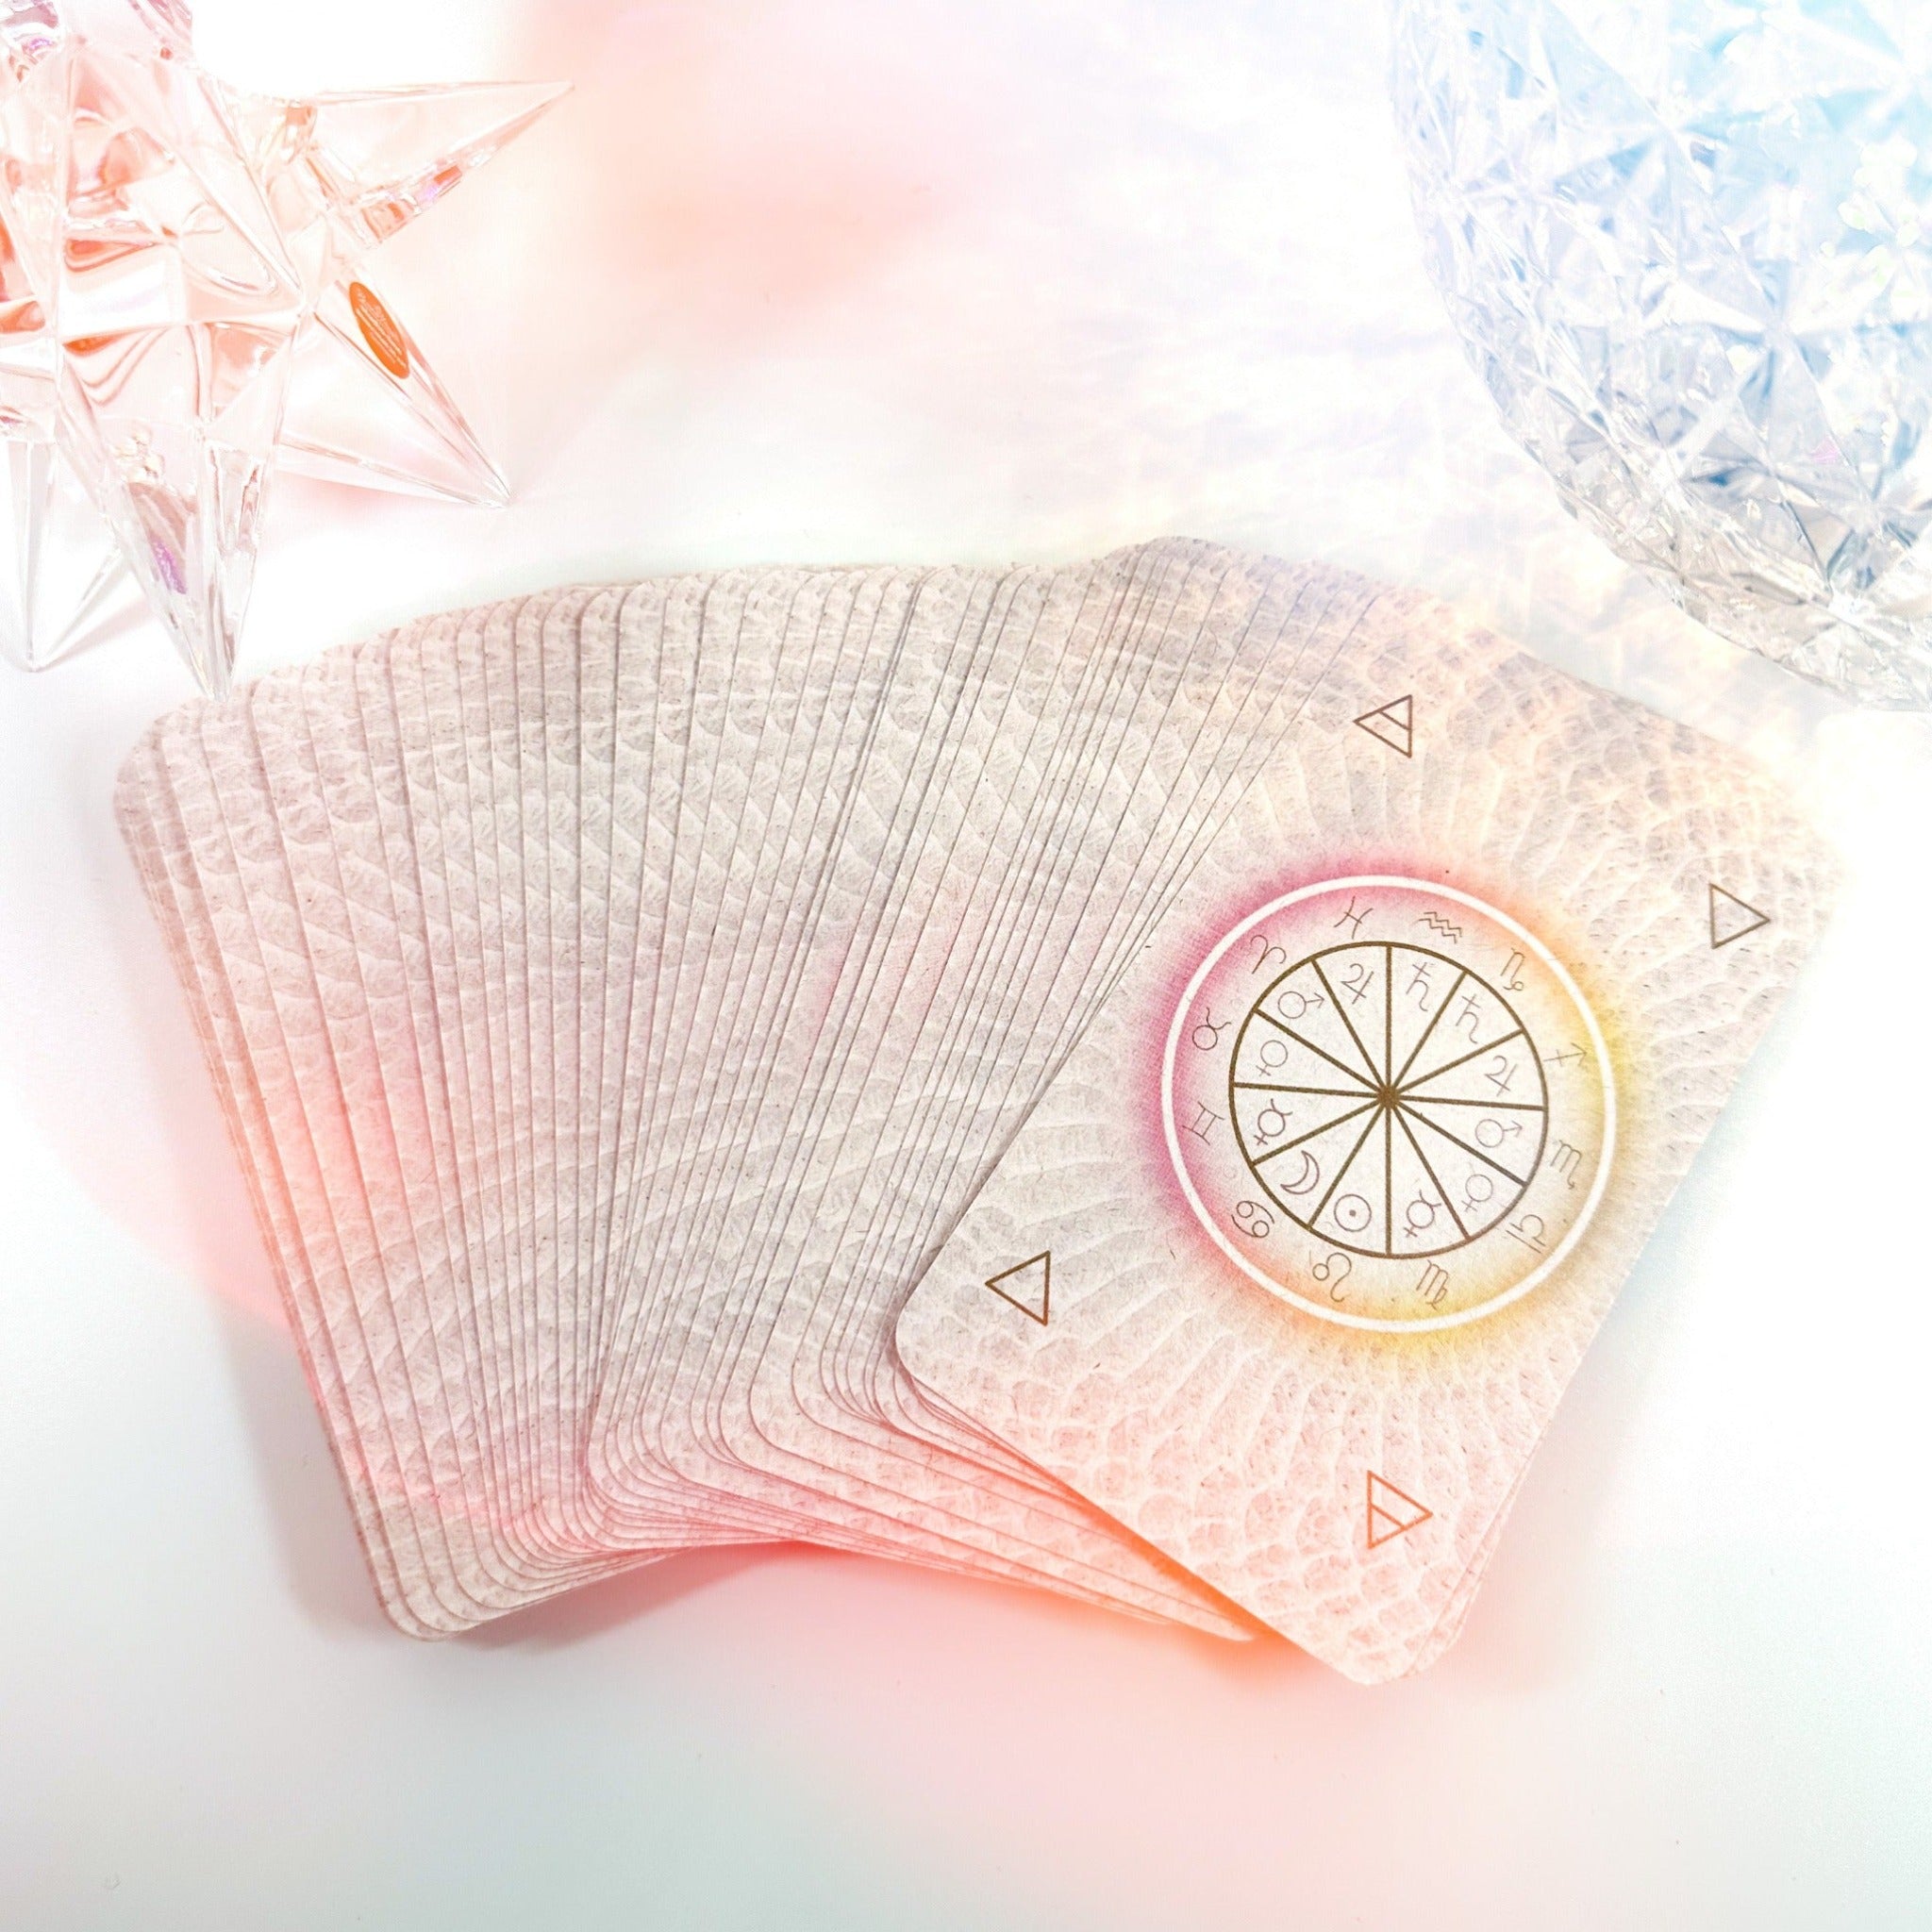 astrochemical tarot card backs